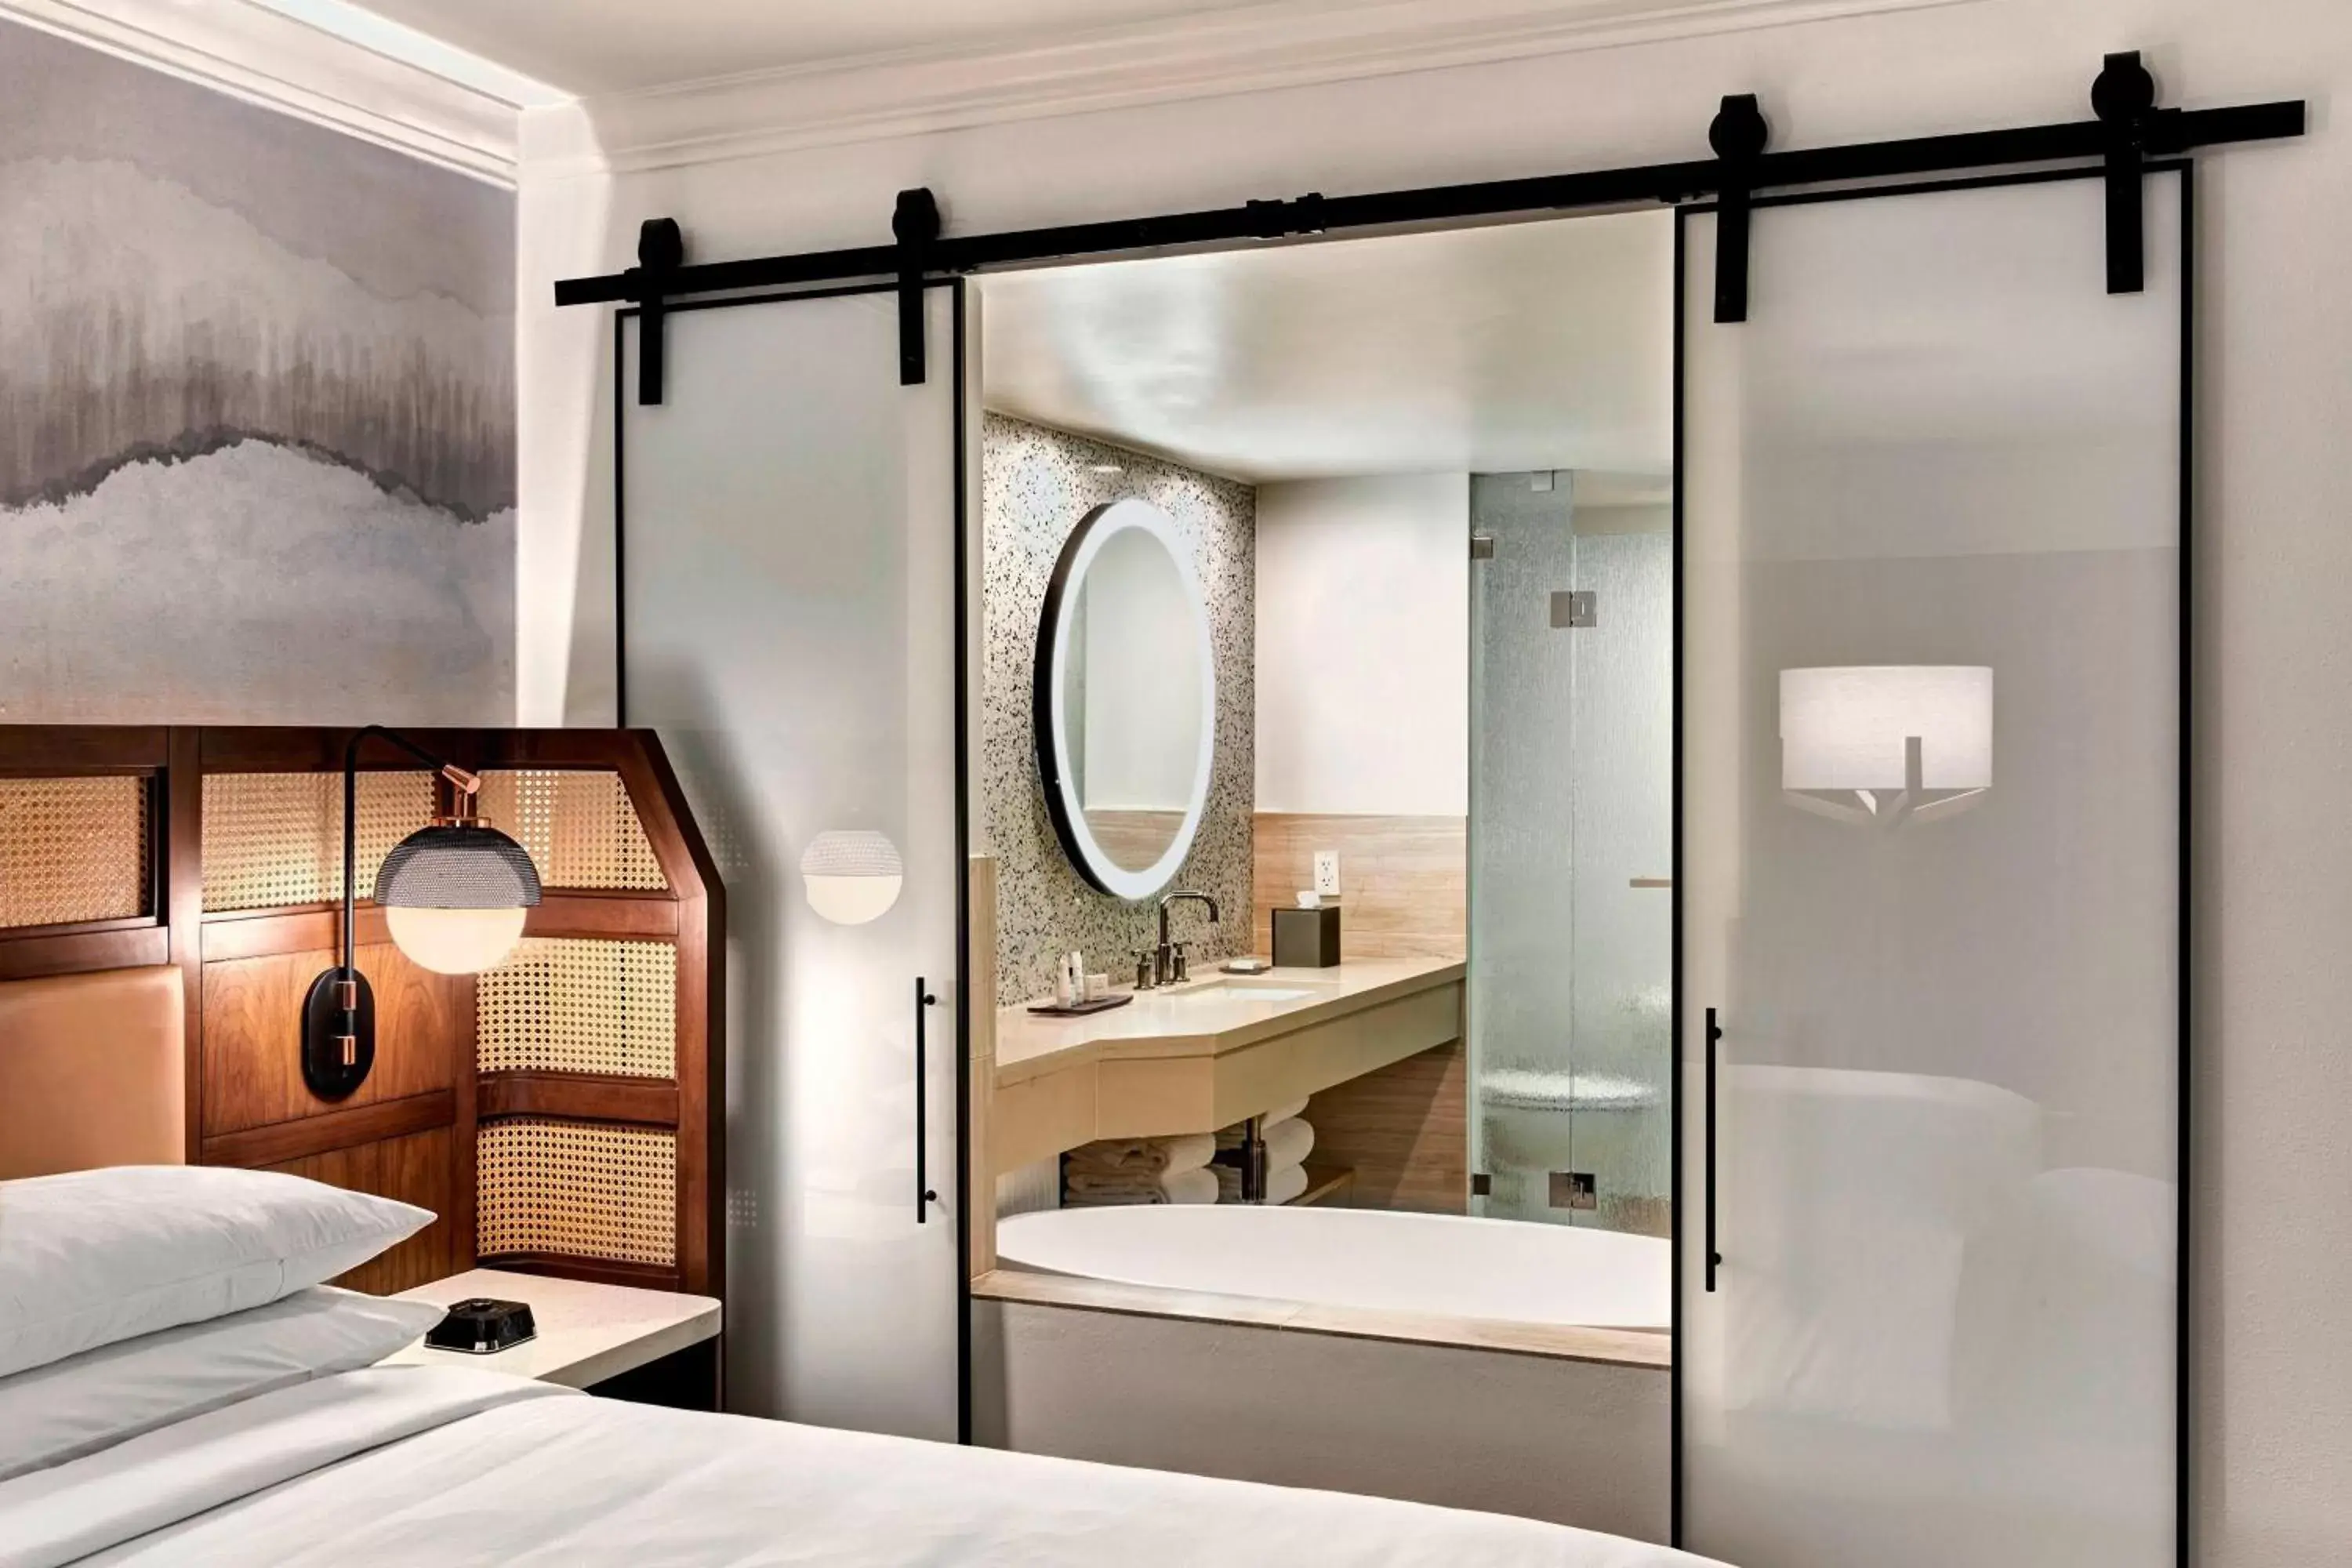 Photo of the whole room, Bathroom in JW Marriott Desert Springs Resort & Spa